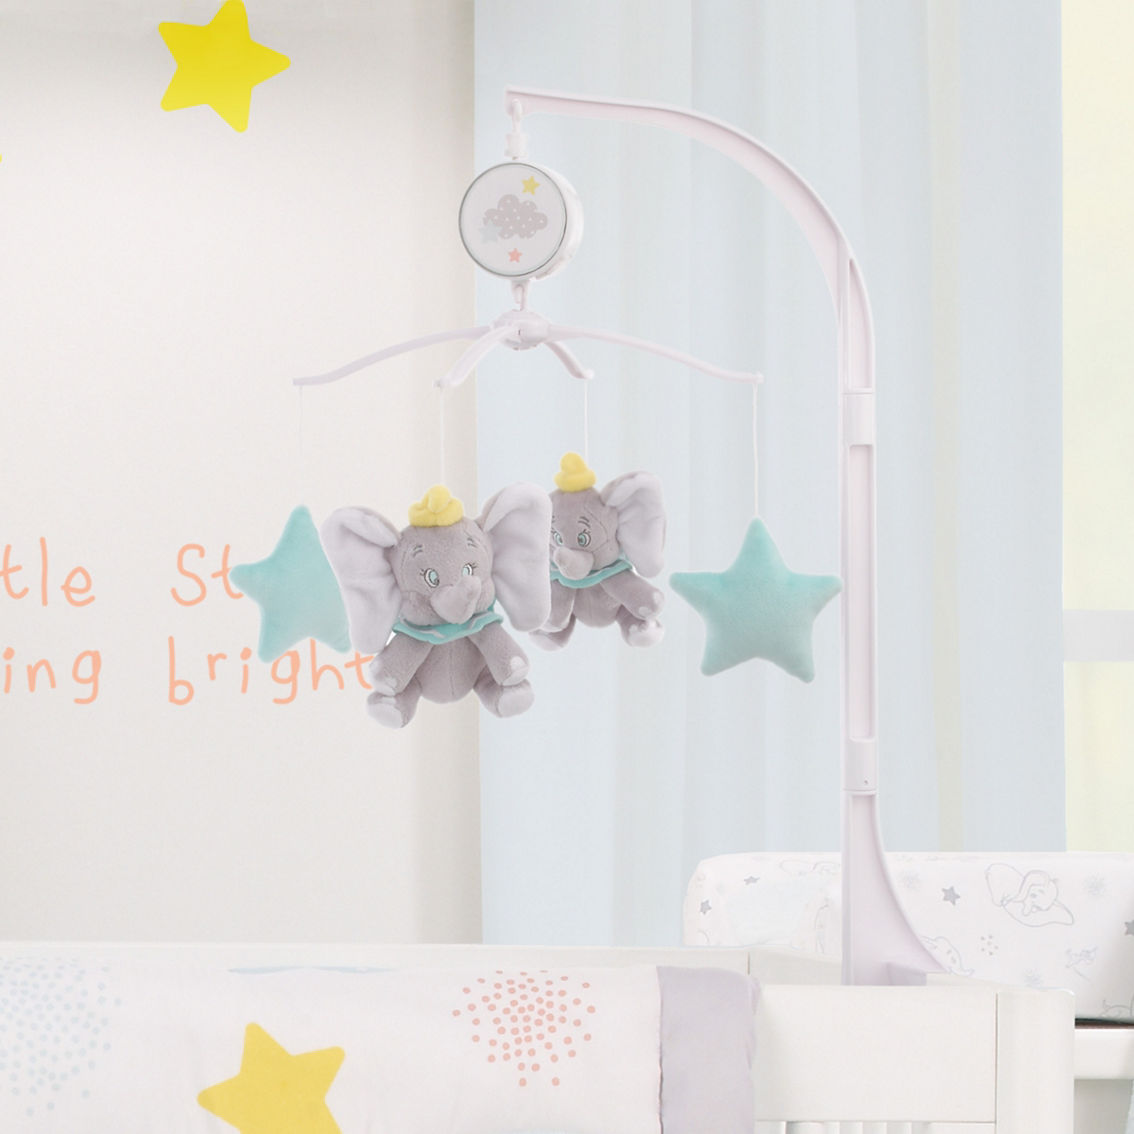 Disney Dumbo Shine Bright Little Star Musical Mobile - Image 2 of 3